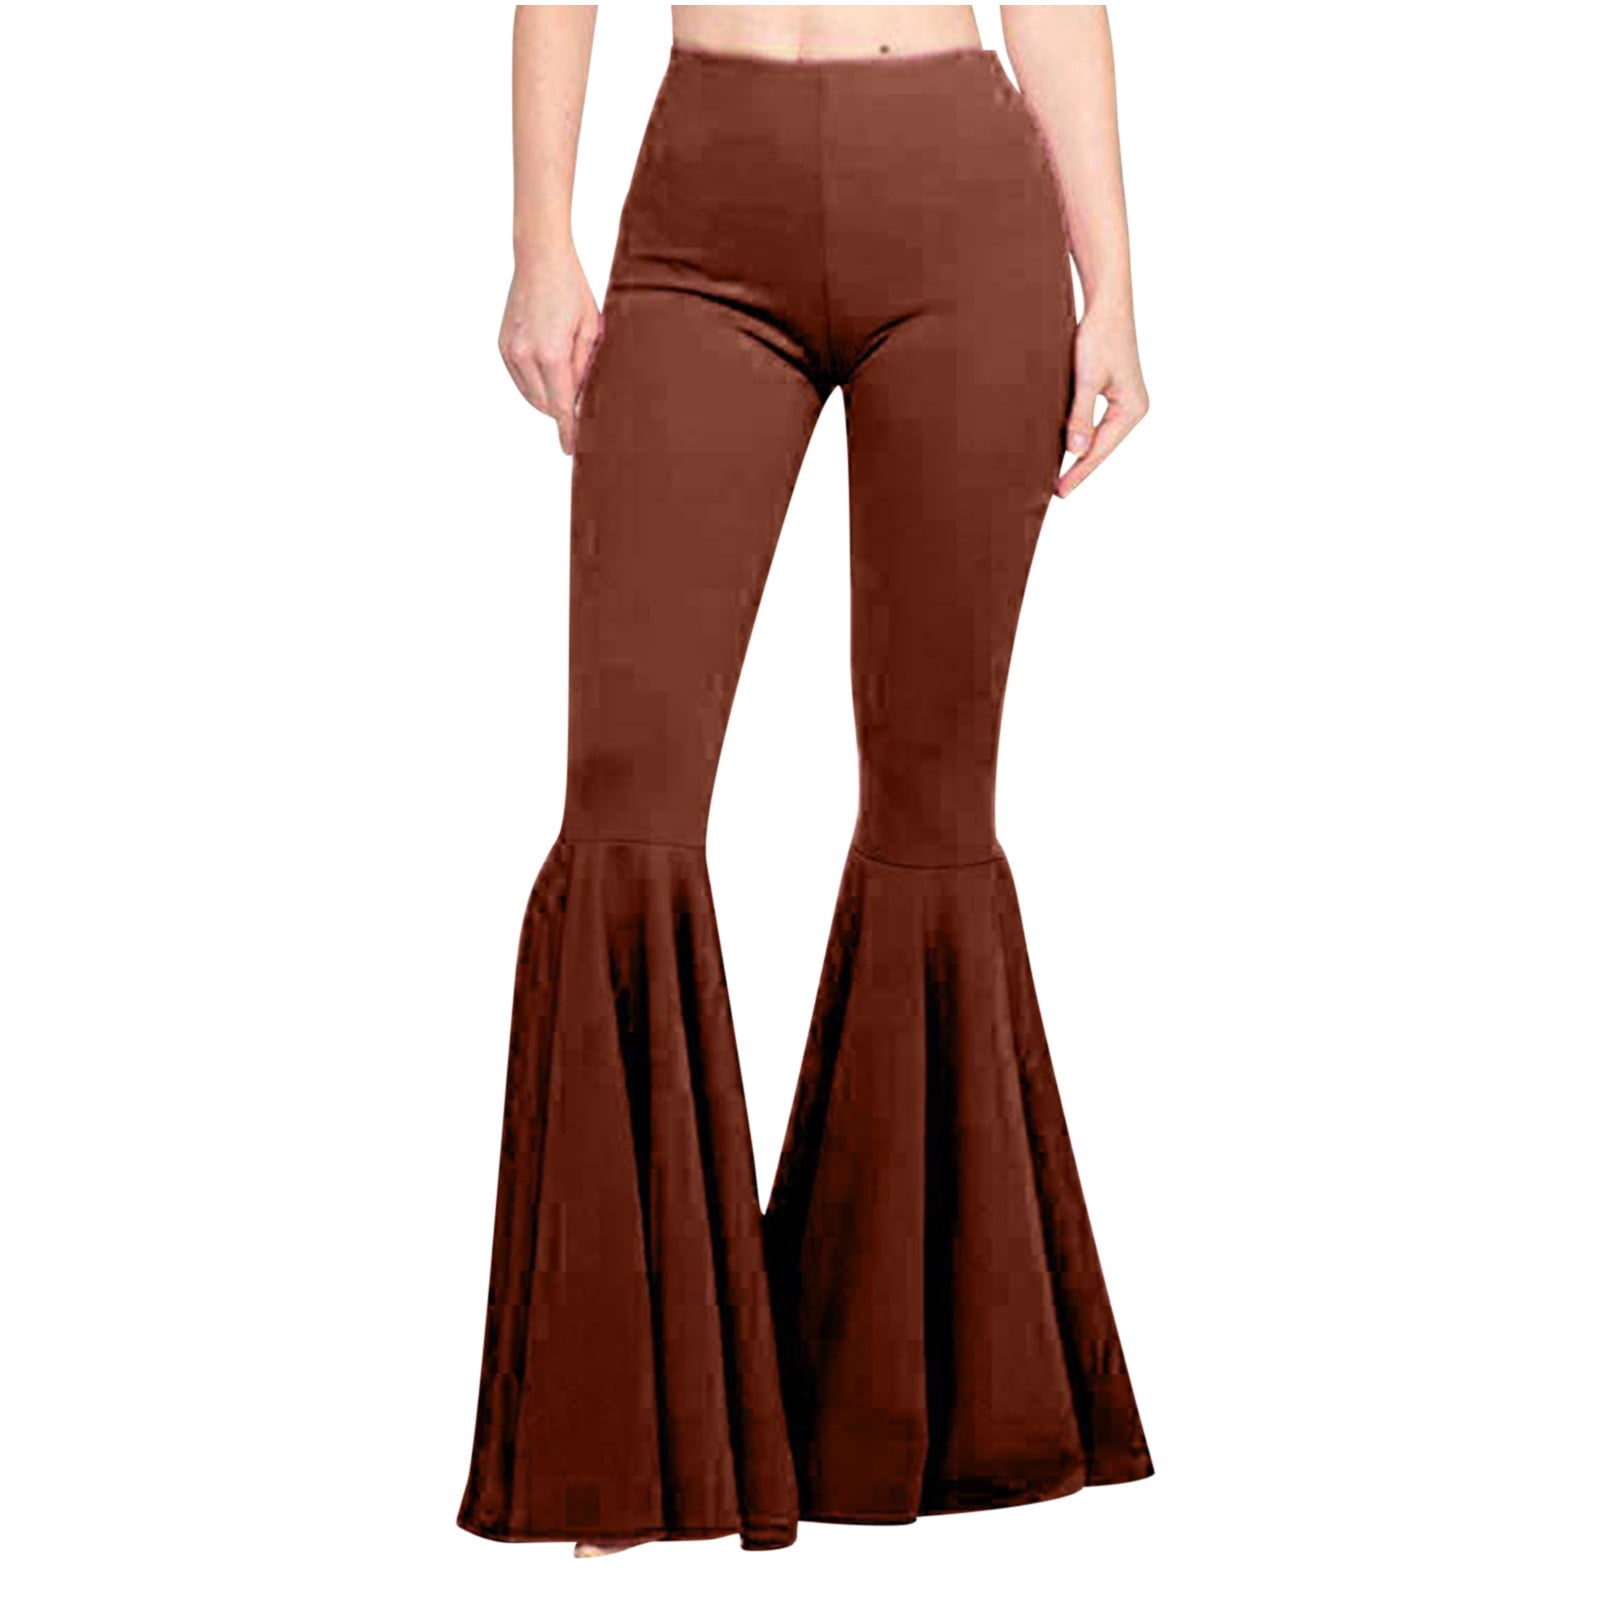 qILAKOG Bell Bottom Pants For Women, Women's Fashion Casual